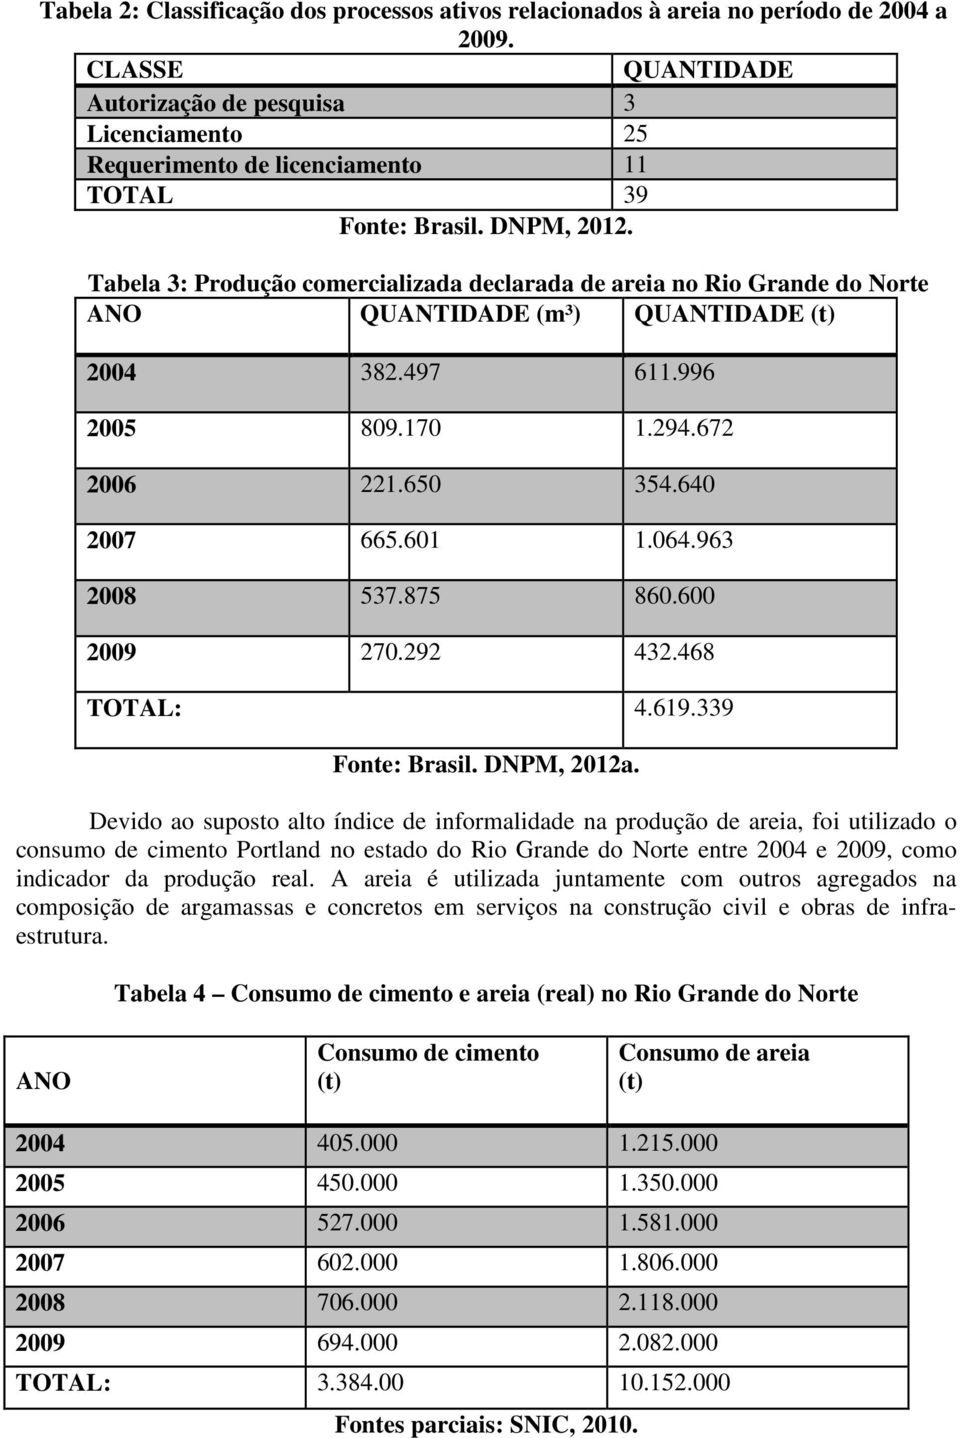 Tabela 3: Produção comercializada declarada de areia no Rio Grande do Norte ANO QUANTIDADE (m³) QUANTIDADE (t) 2004 382.497 611.996 2005 809.170 1.294.672 2006 221.650 354.640 2007 665.601 1.064.